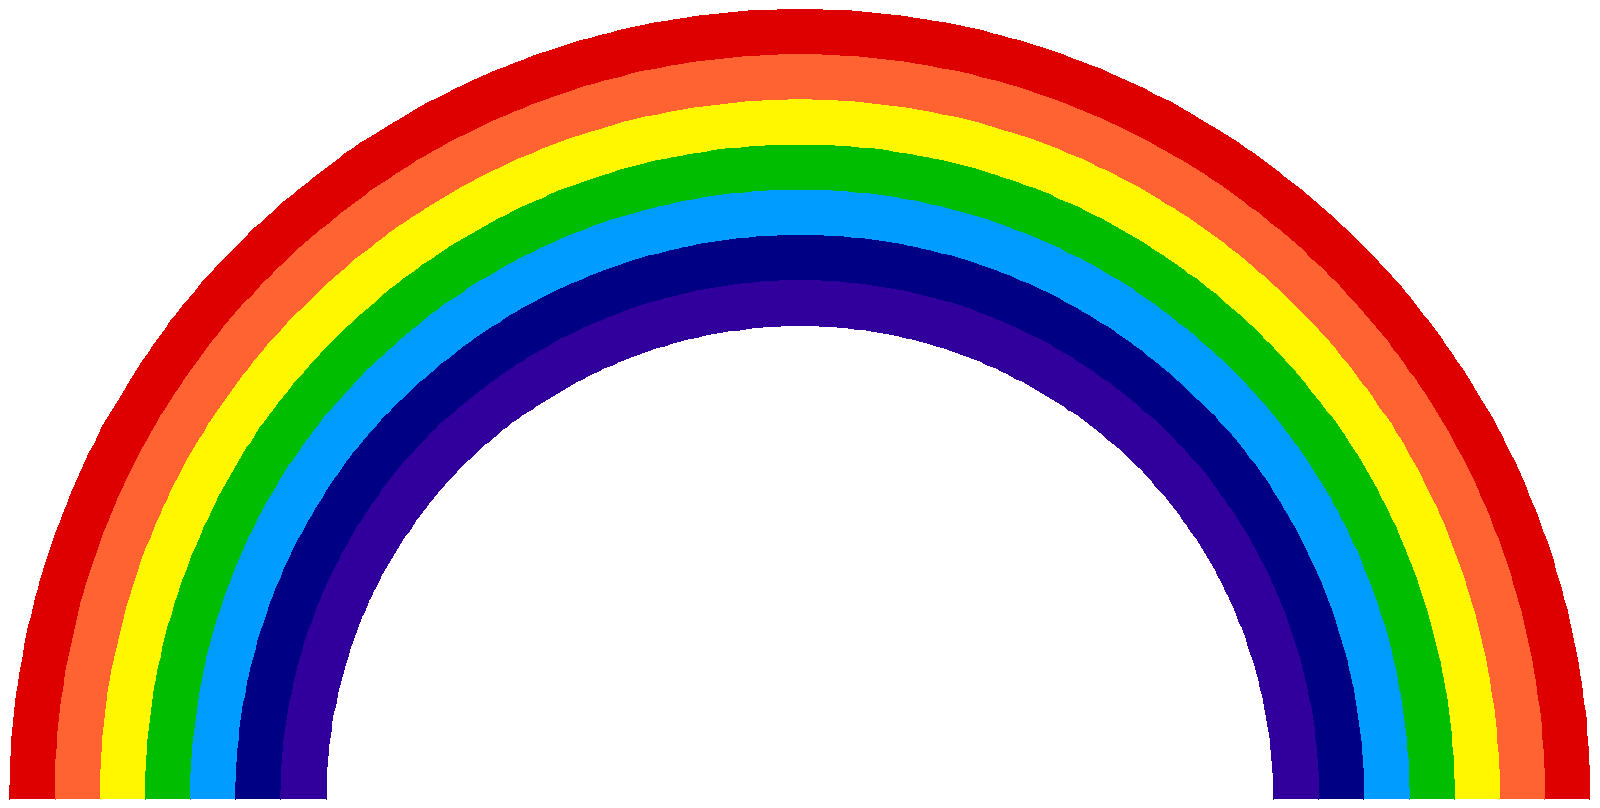 17 Rainbow Graphic Art Images - Cartoon Rainbow Clip Art, Rainbow with